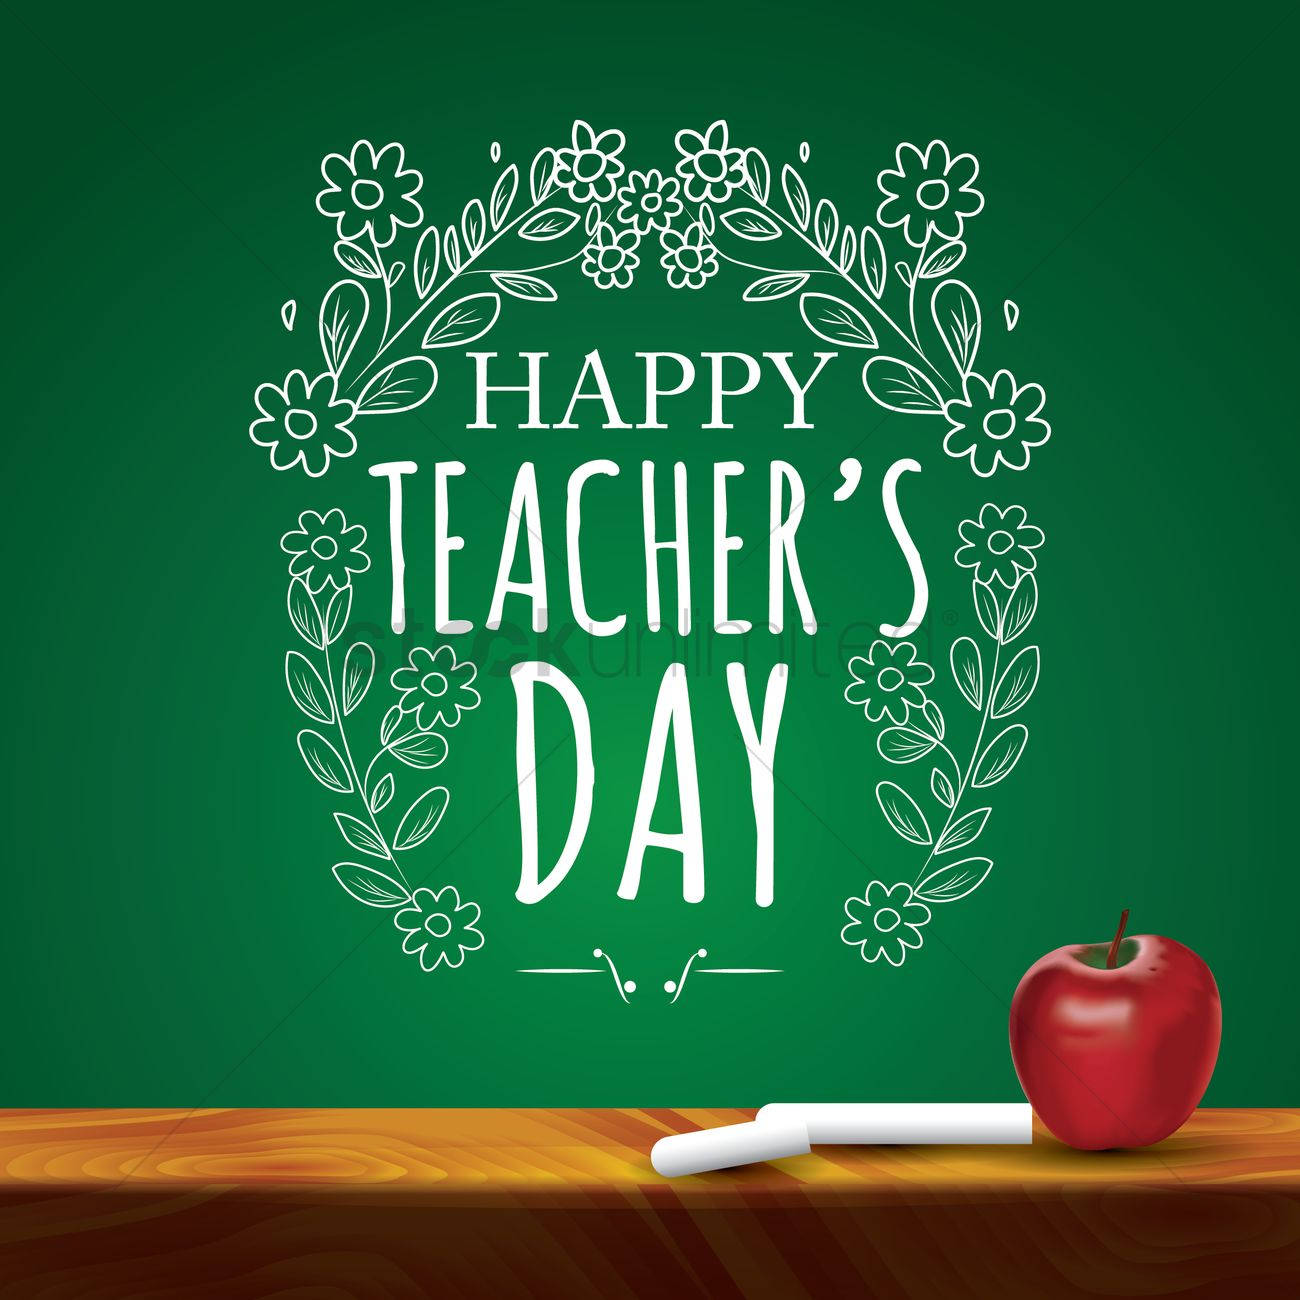 Happy Teachers' Day Chalkboard